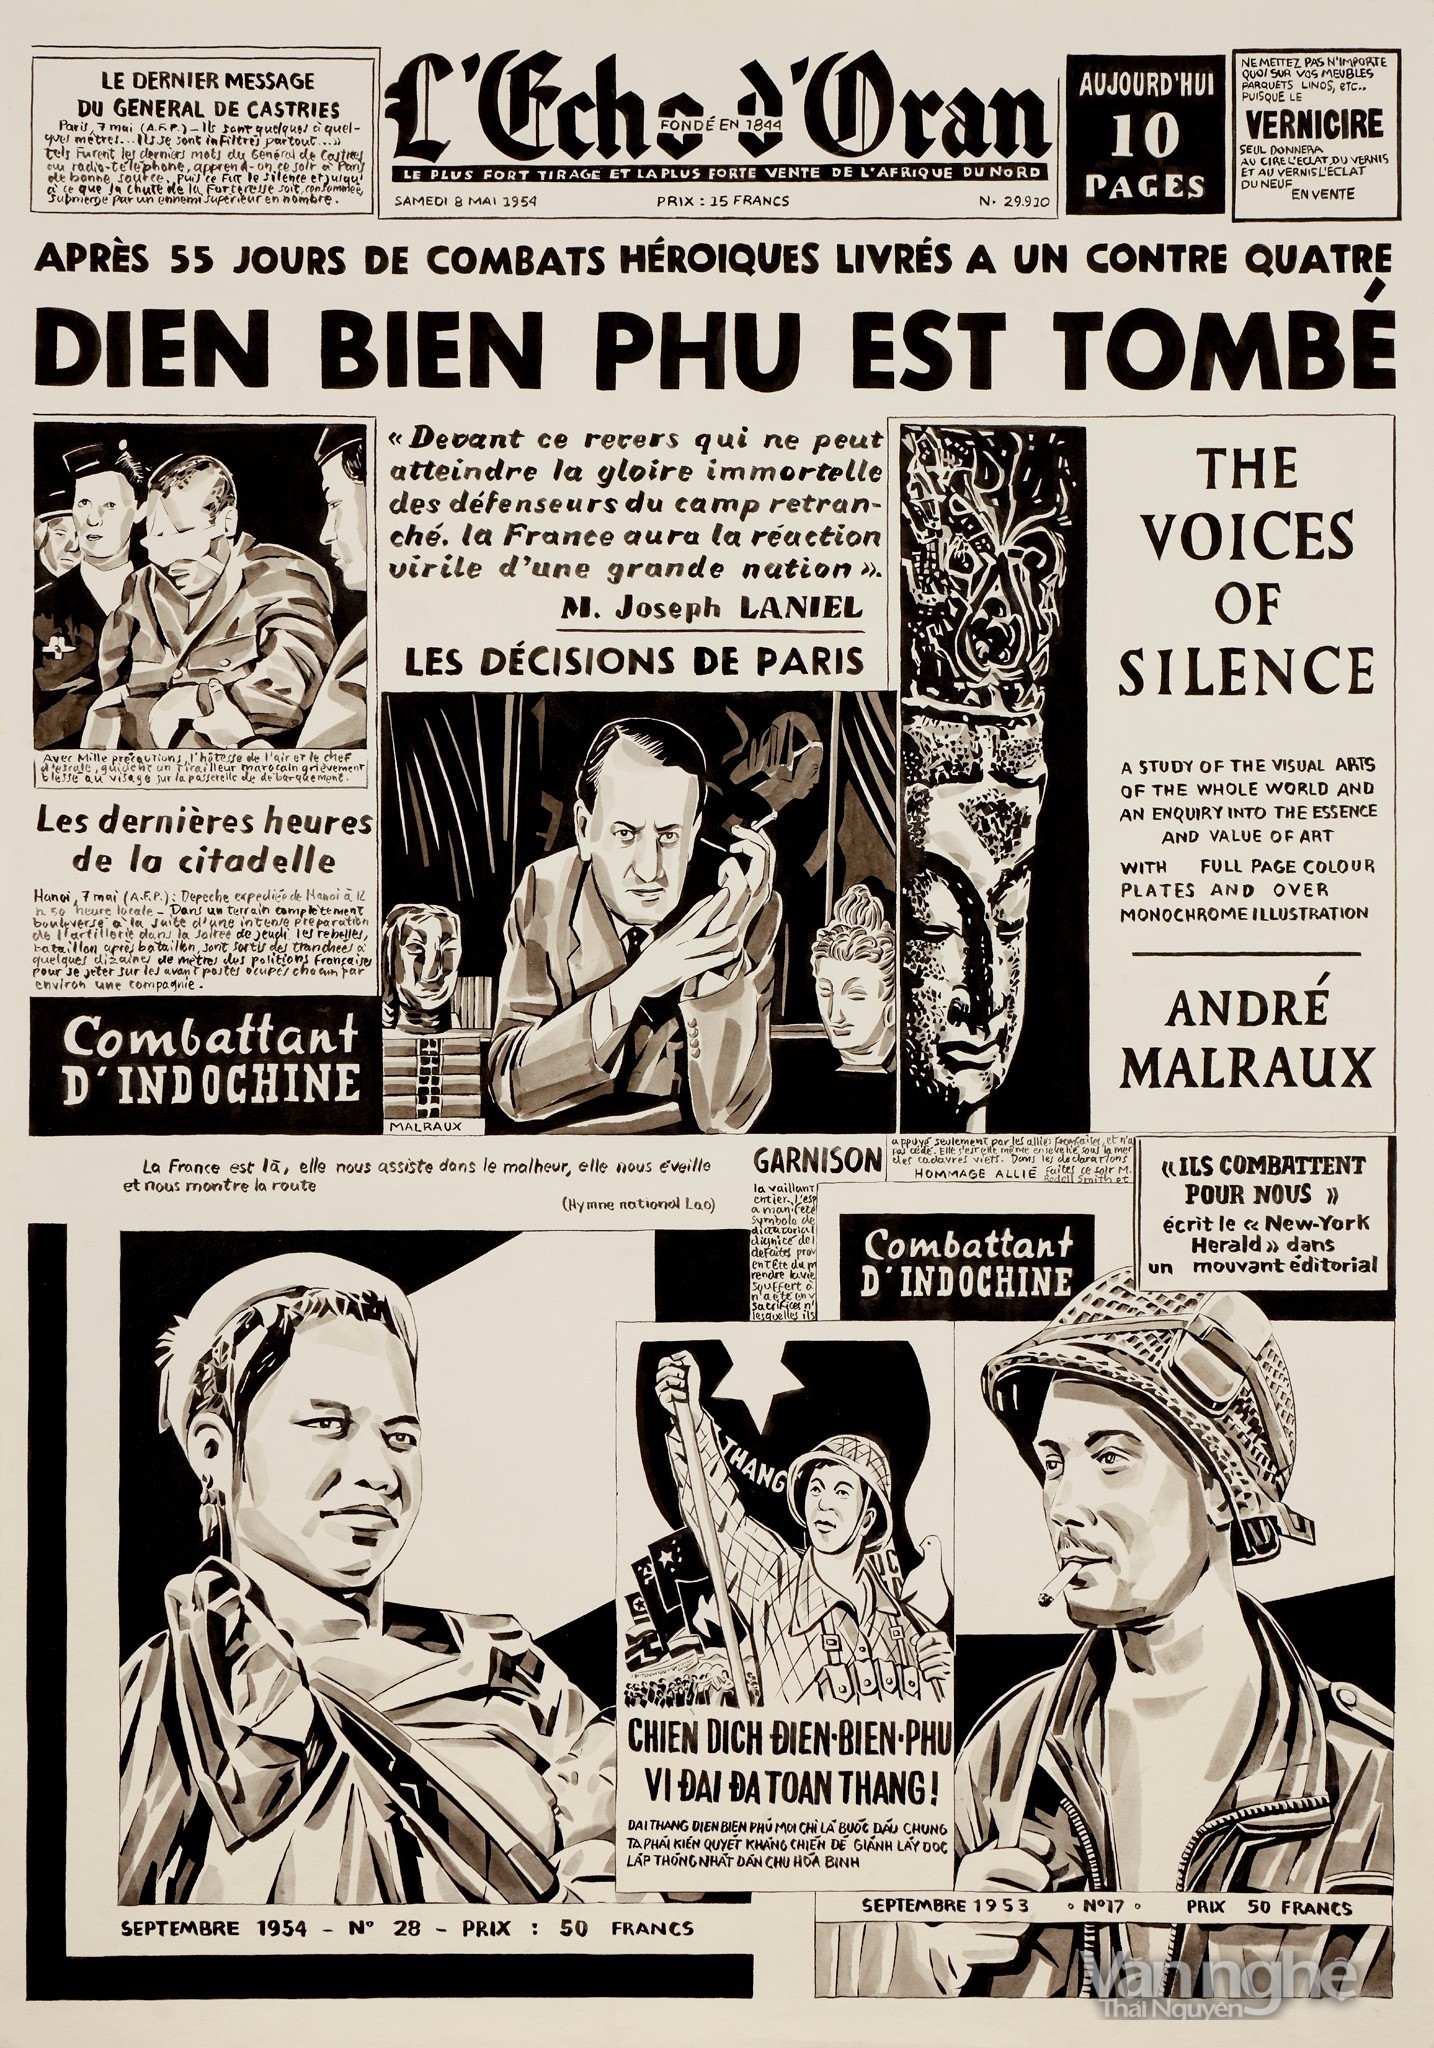 Tờ l'Echo d'Oran ra ngày 8/5/1954